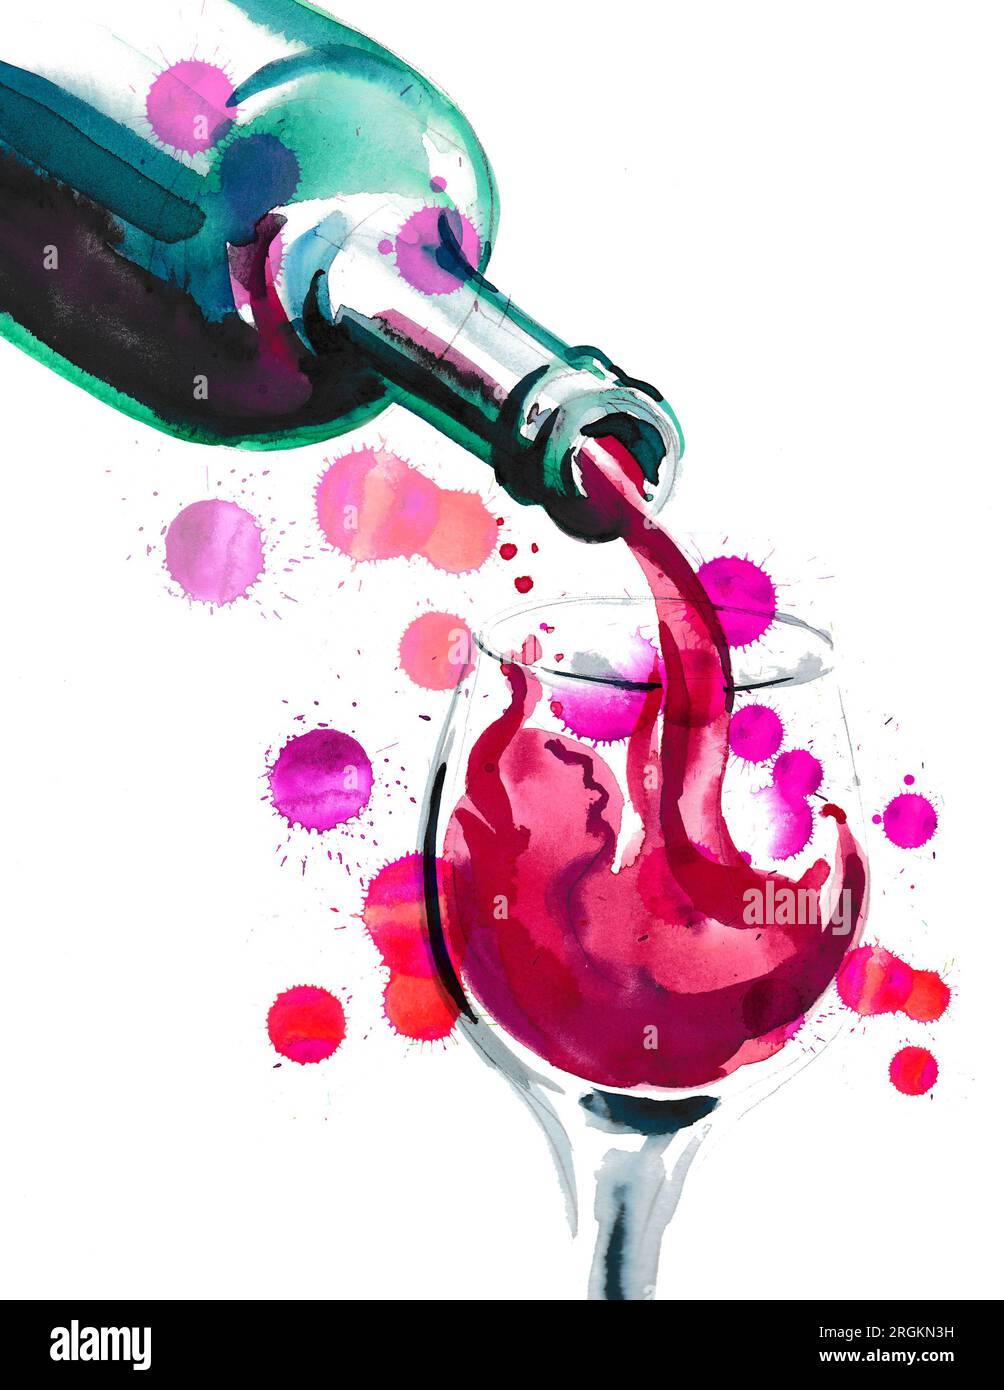 Flasche Rotwein und Glas. Handgezeichnetes Aquarellgemälde Stockfoto